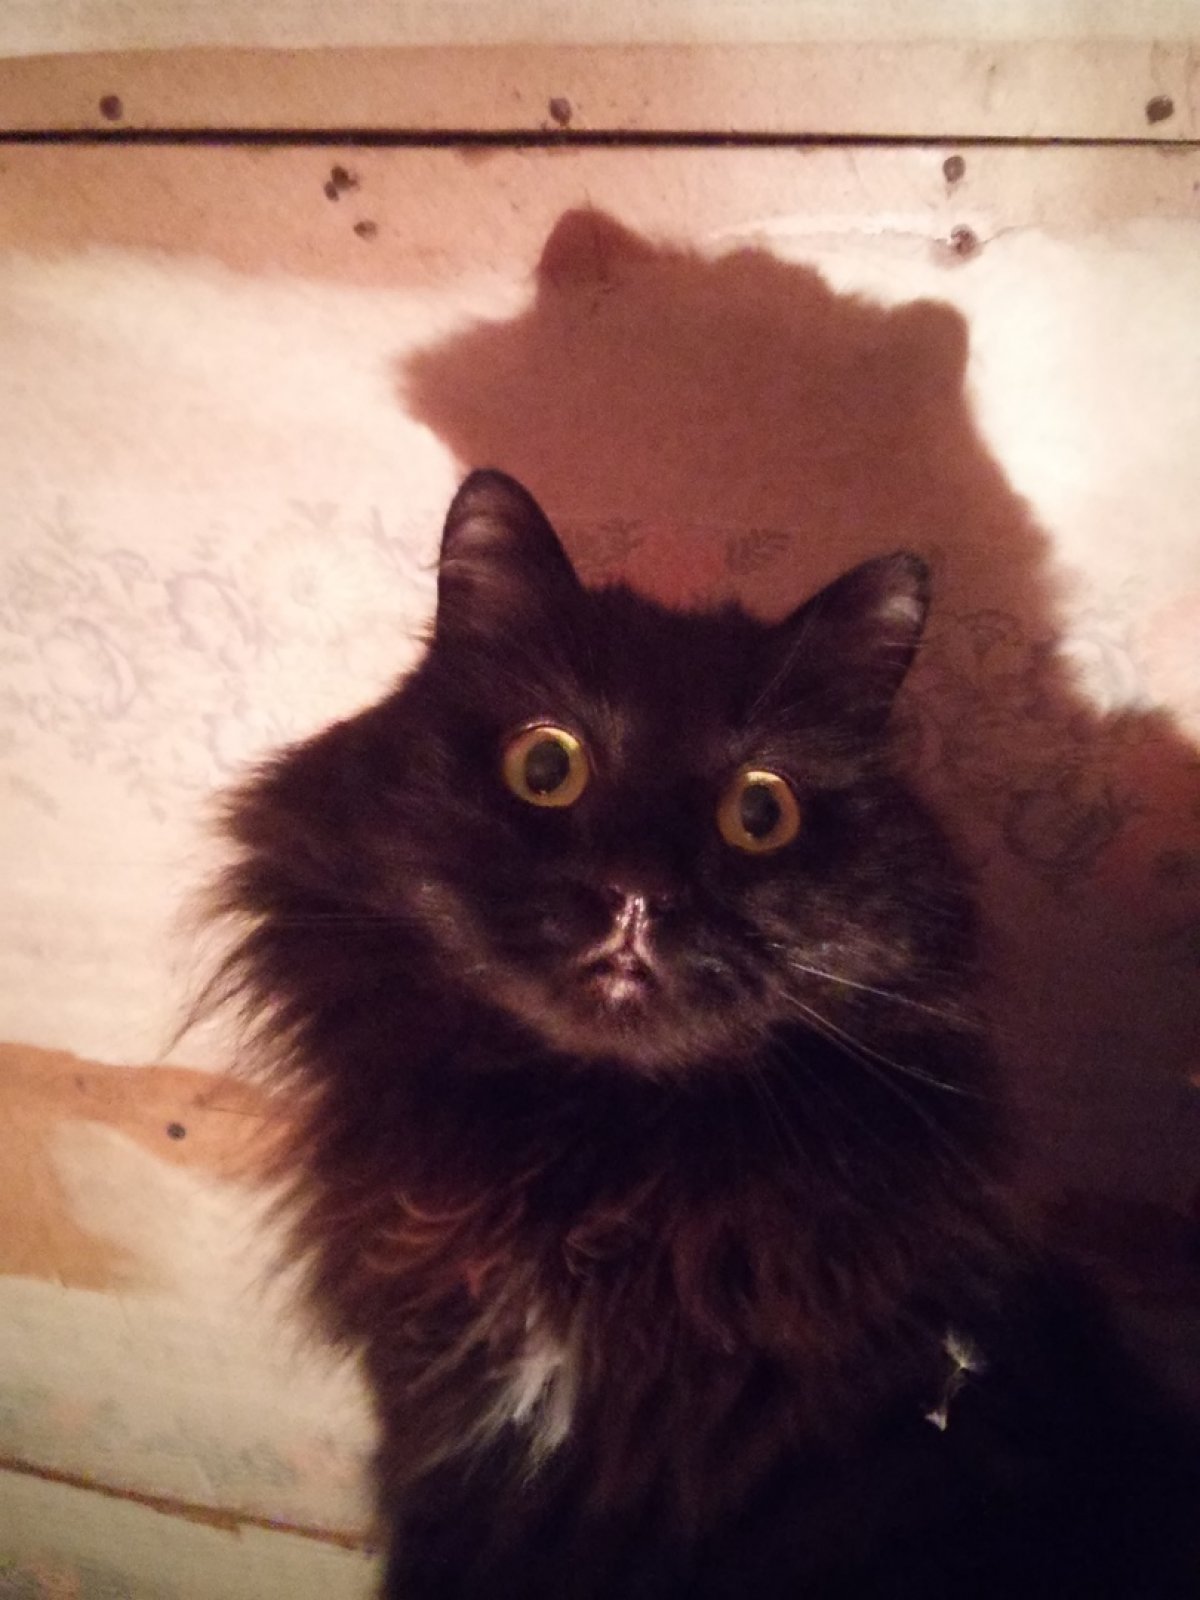 Привет всем! Я лучший друг ведьм Флафи - маленькая чёрная кошка которая любит спать на коленках и в обнимку